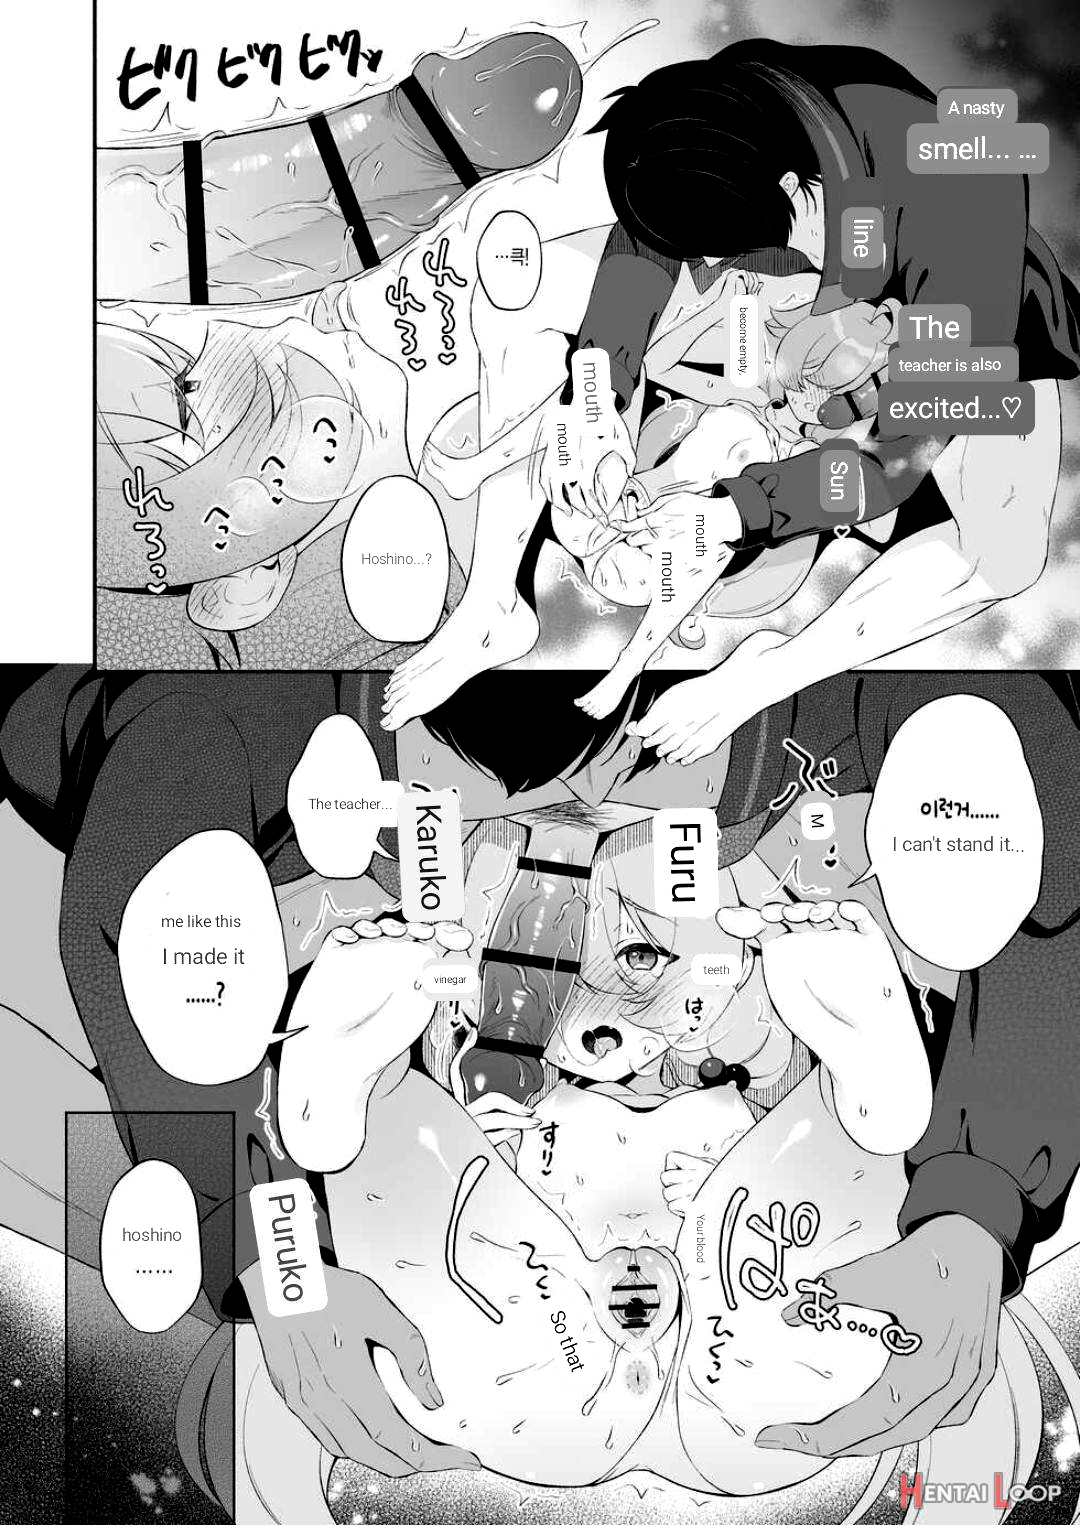 Torokeru Hoshino page 10